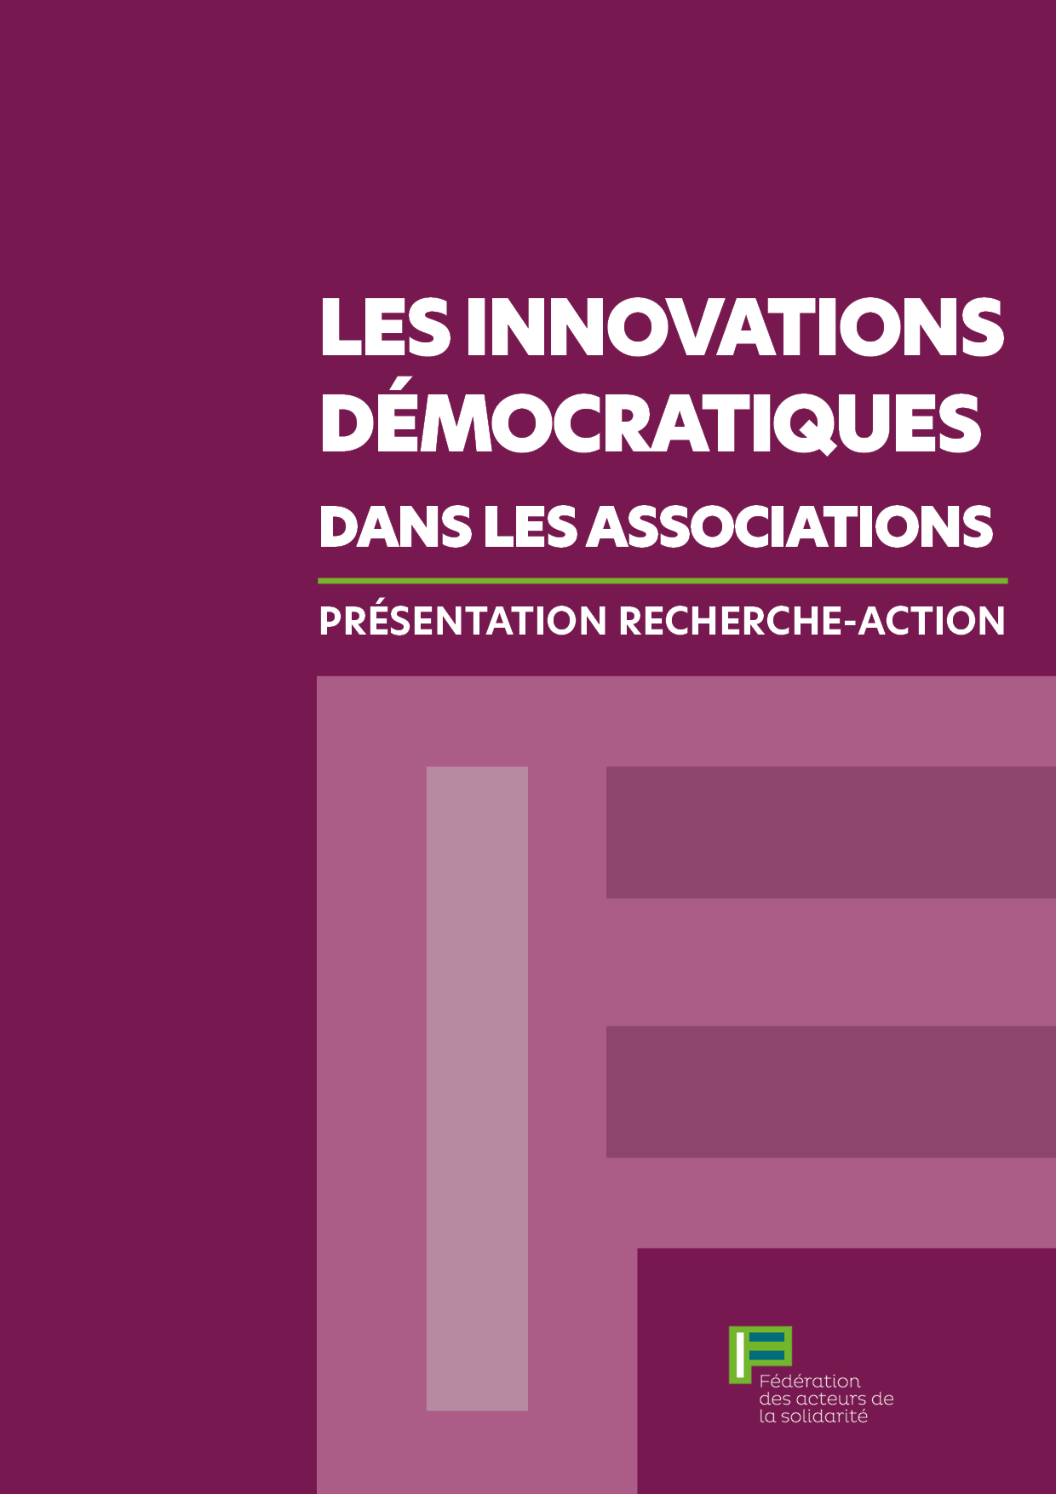 Note de présentation FAS & Cose comune sur la recherche-action innovations associatives